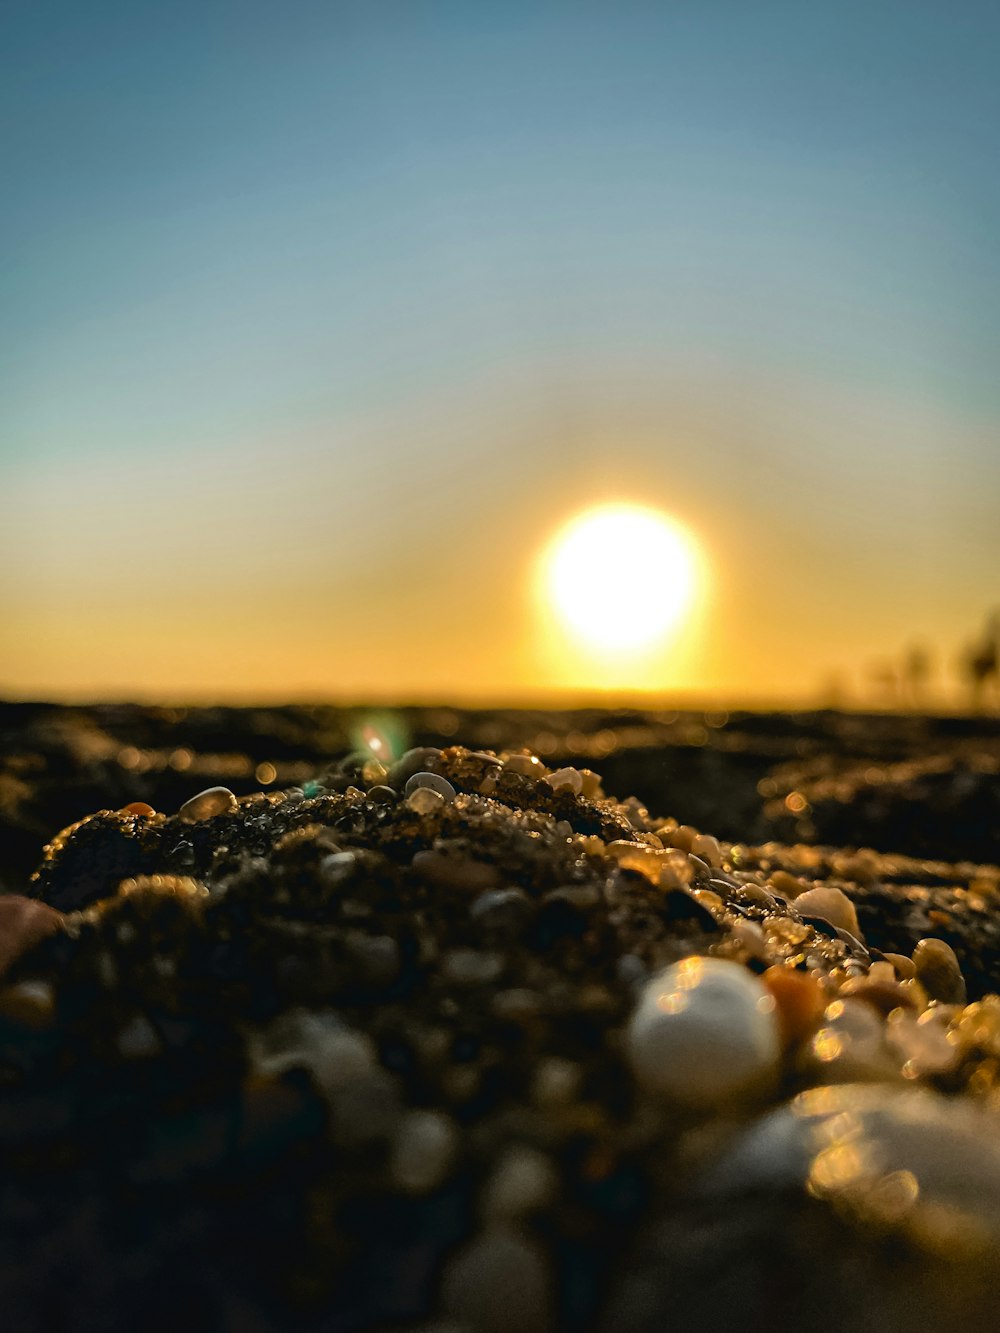 pedras pretas no chão durante o pôr do sol